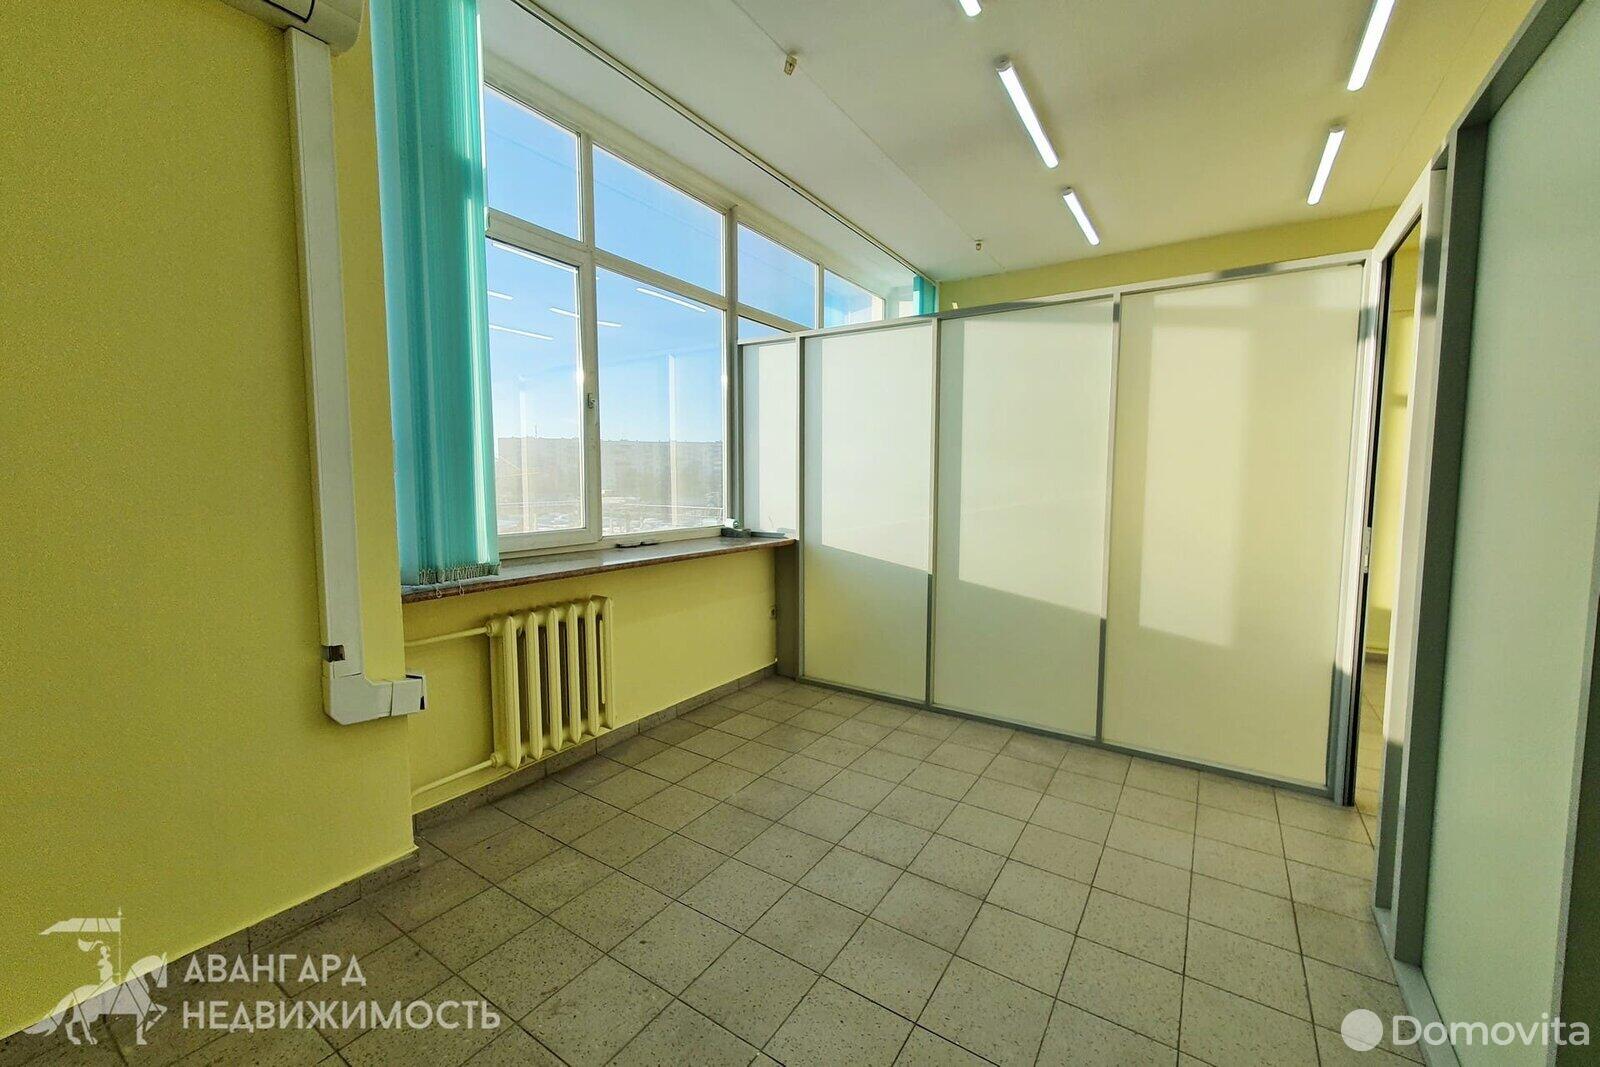 Снять офис на ул. Тимирязева, д. 65 в Минске, 164EUR, код 10817 - фото 3